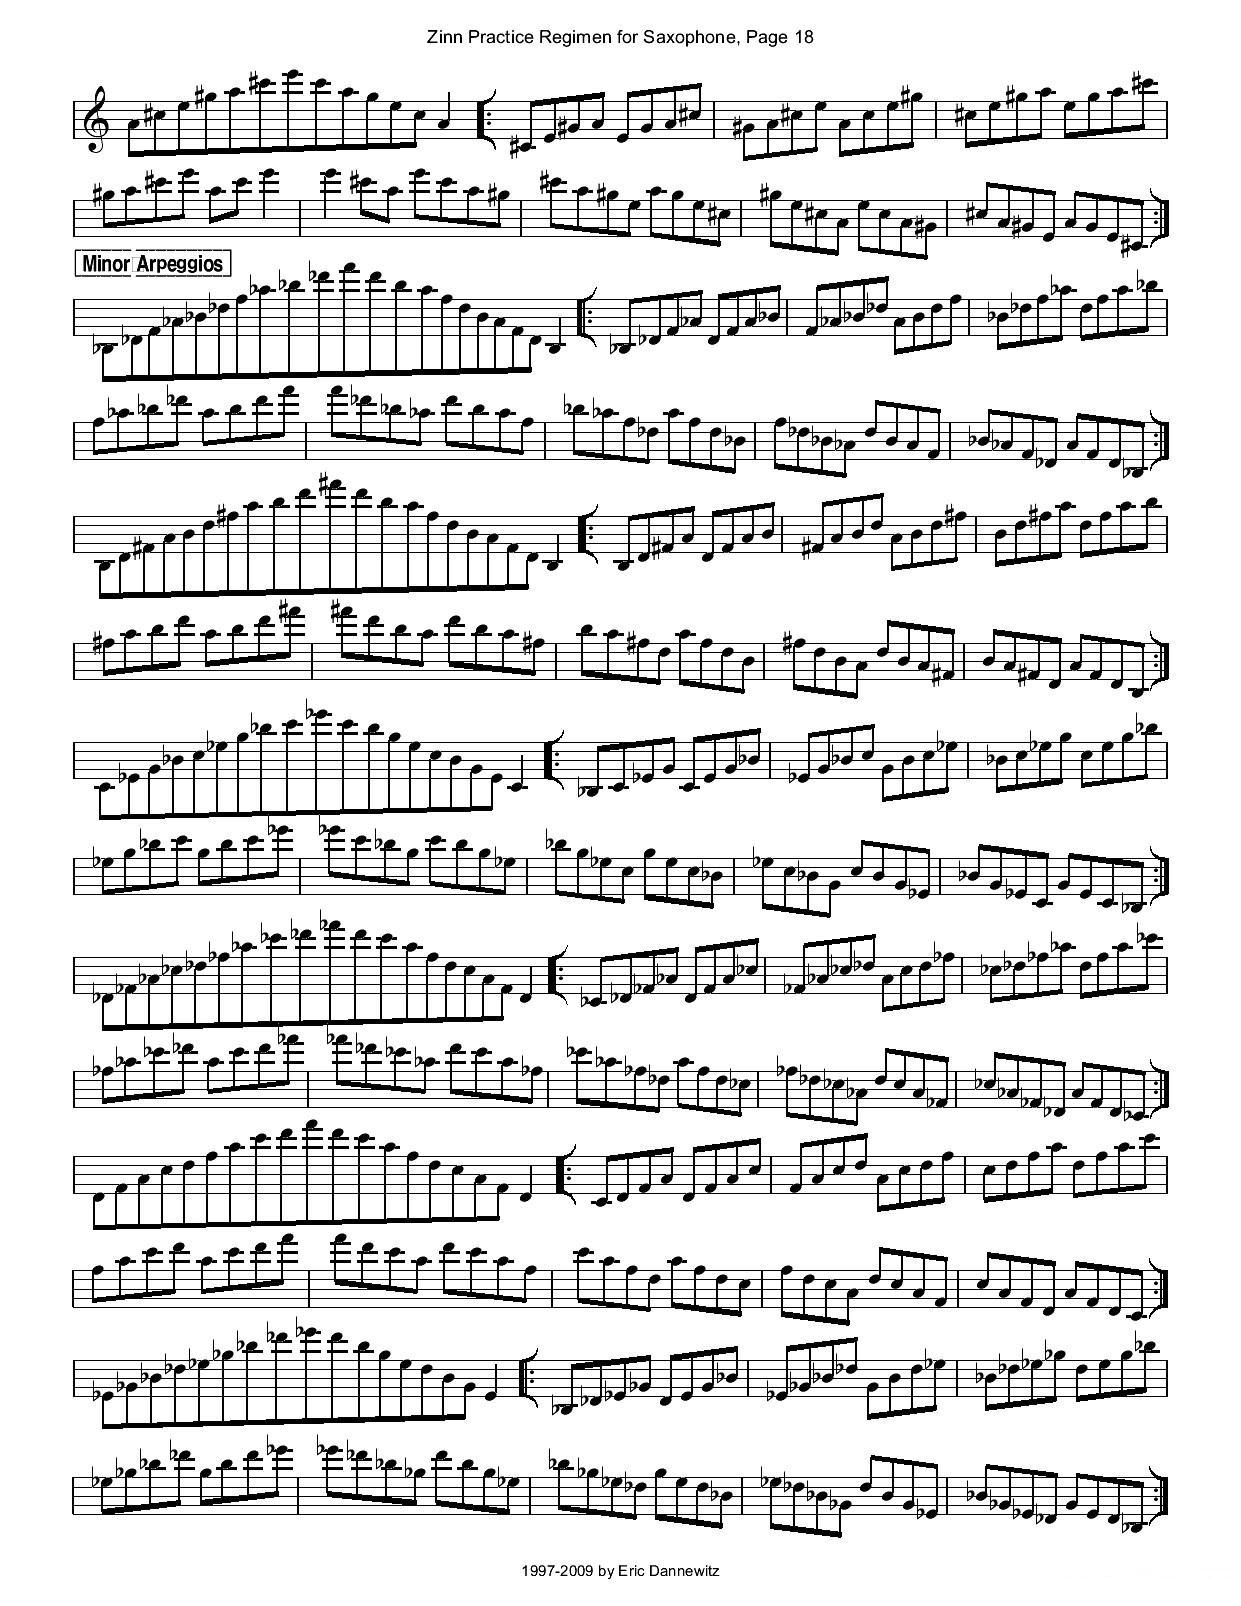 ZinnRegimenSax2009练习曲萨克斯曲谱（图21）